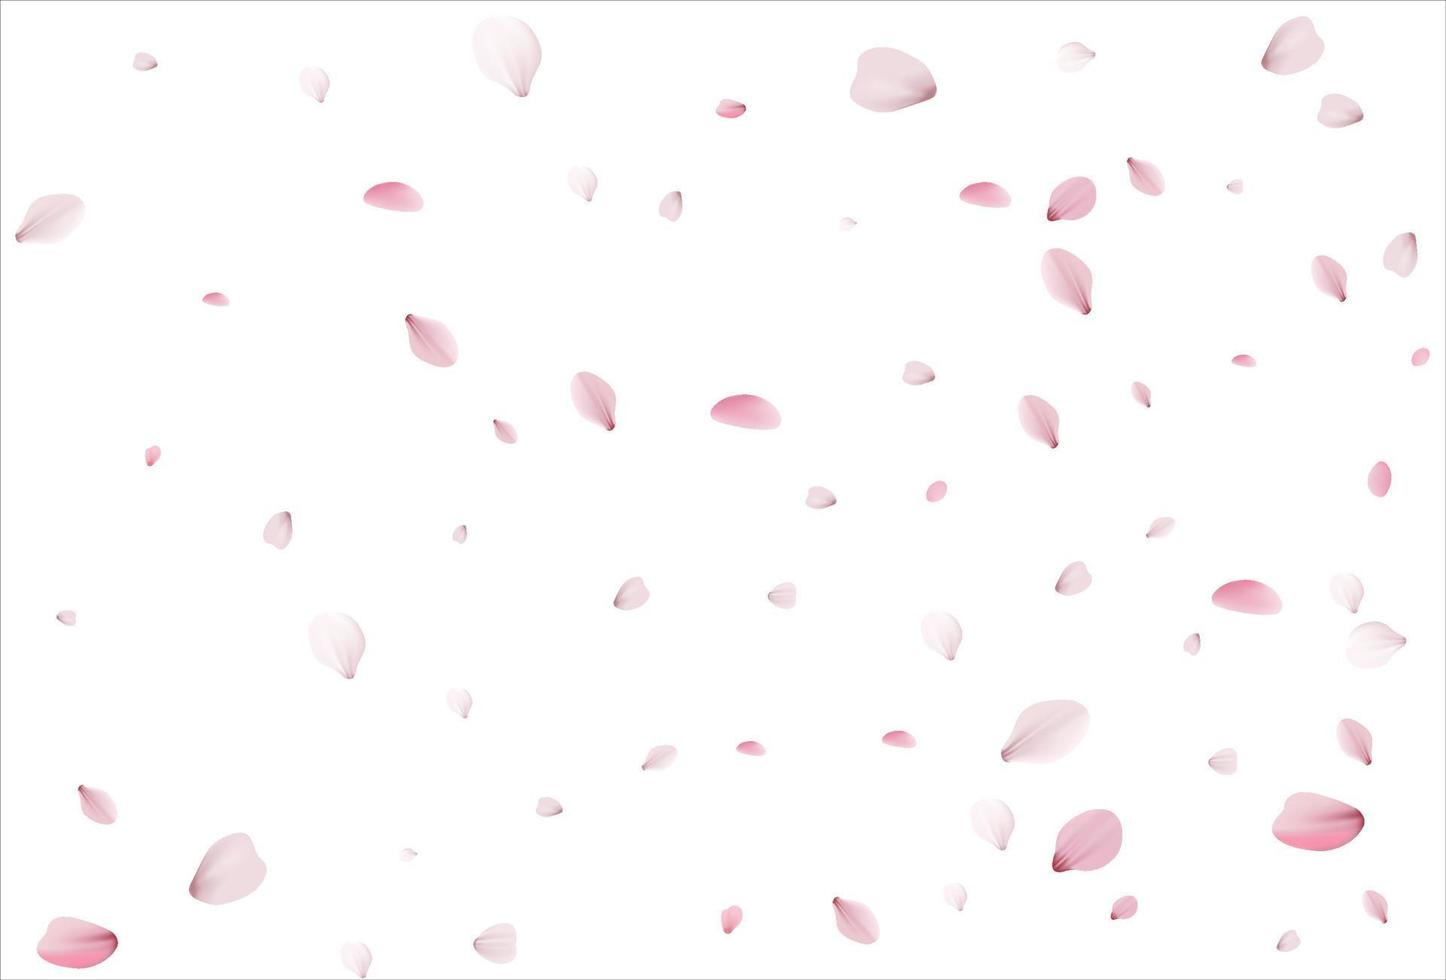 sakura-bloemblaadjes. kersen bloemblaadjes achtergrond vector